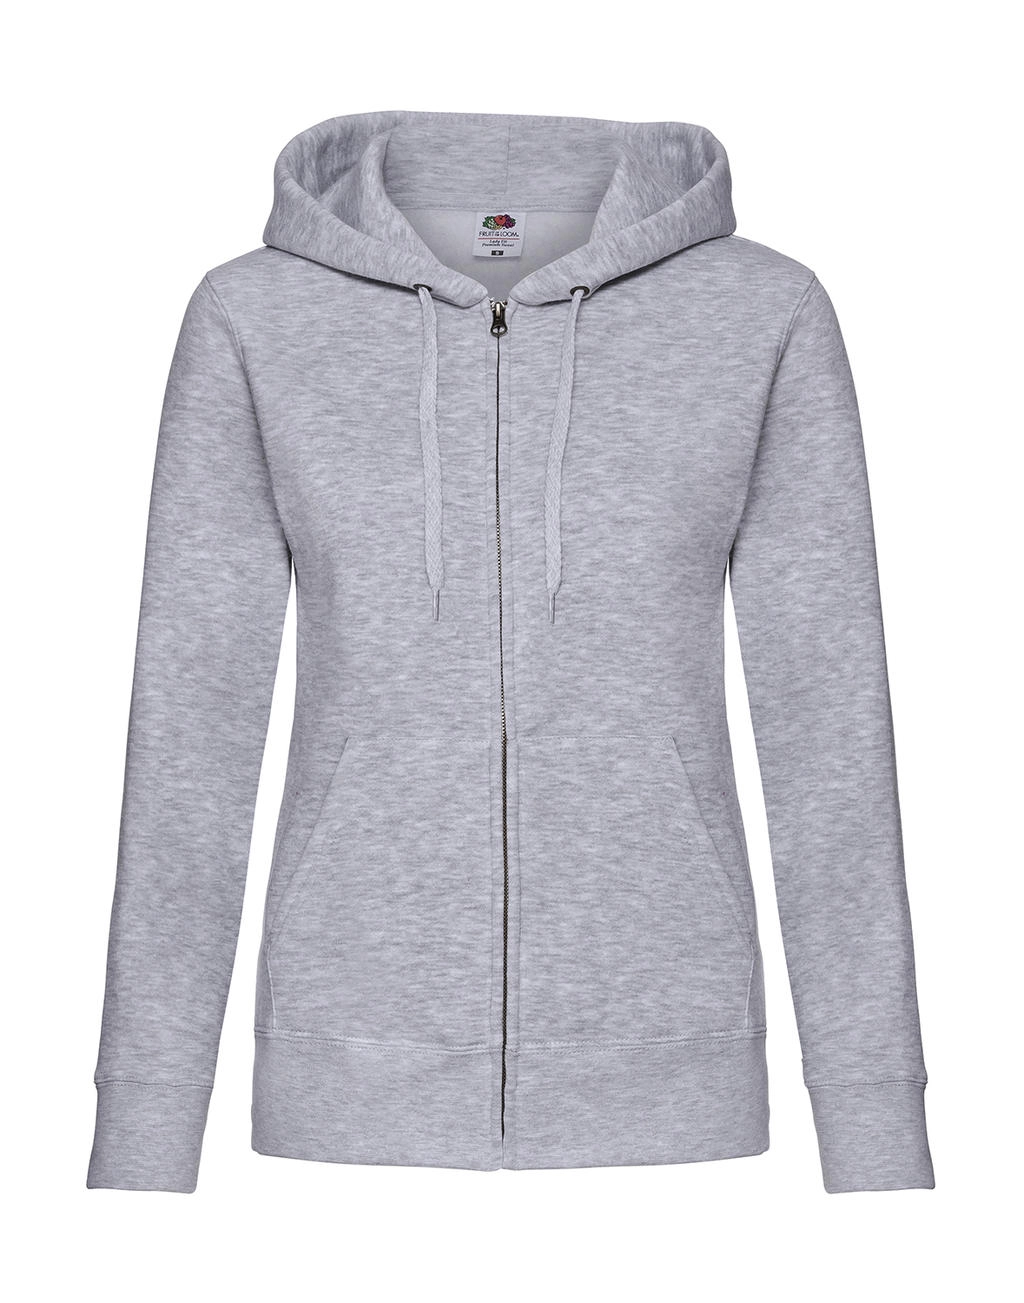 Premium Hooded Sweat Jacket Lady-Fit zum Besticken und Bedrucken in der Farbe Heather Grey mit Ihren Logo, Schriftzug oder Motiv.